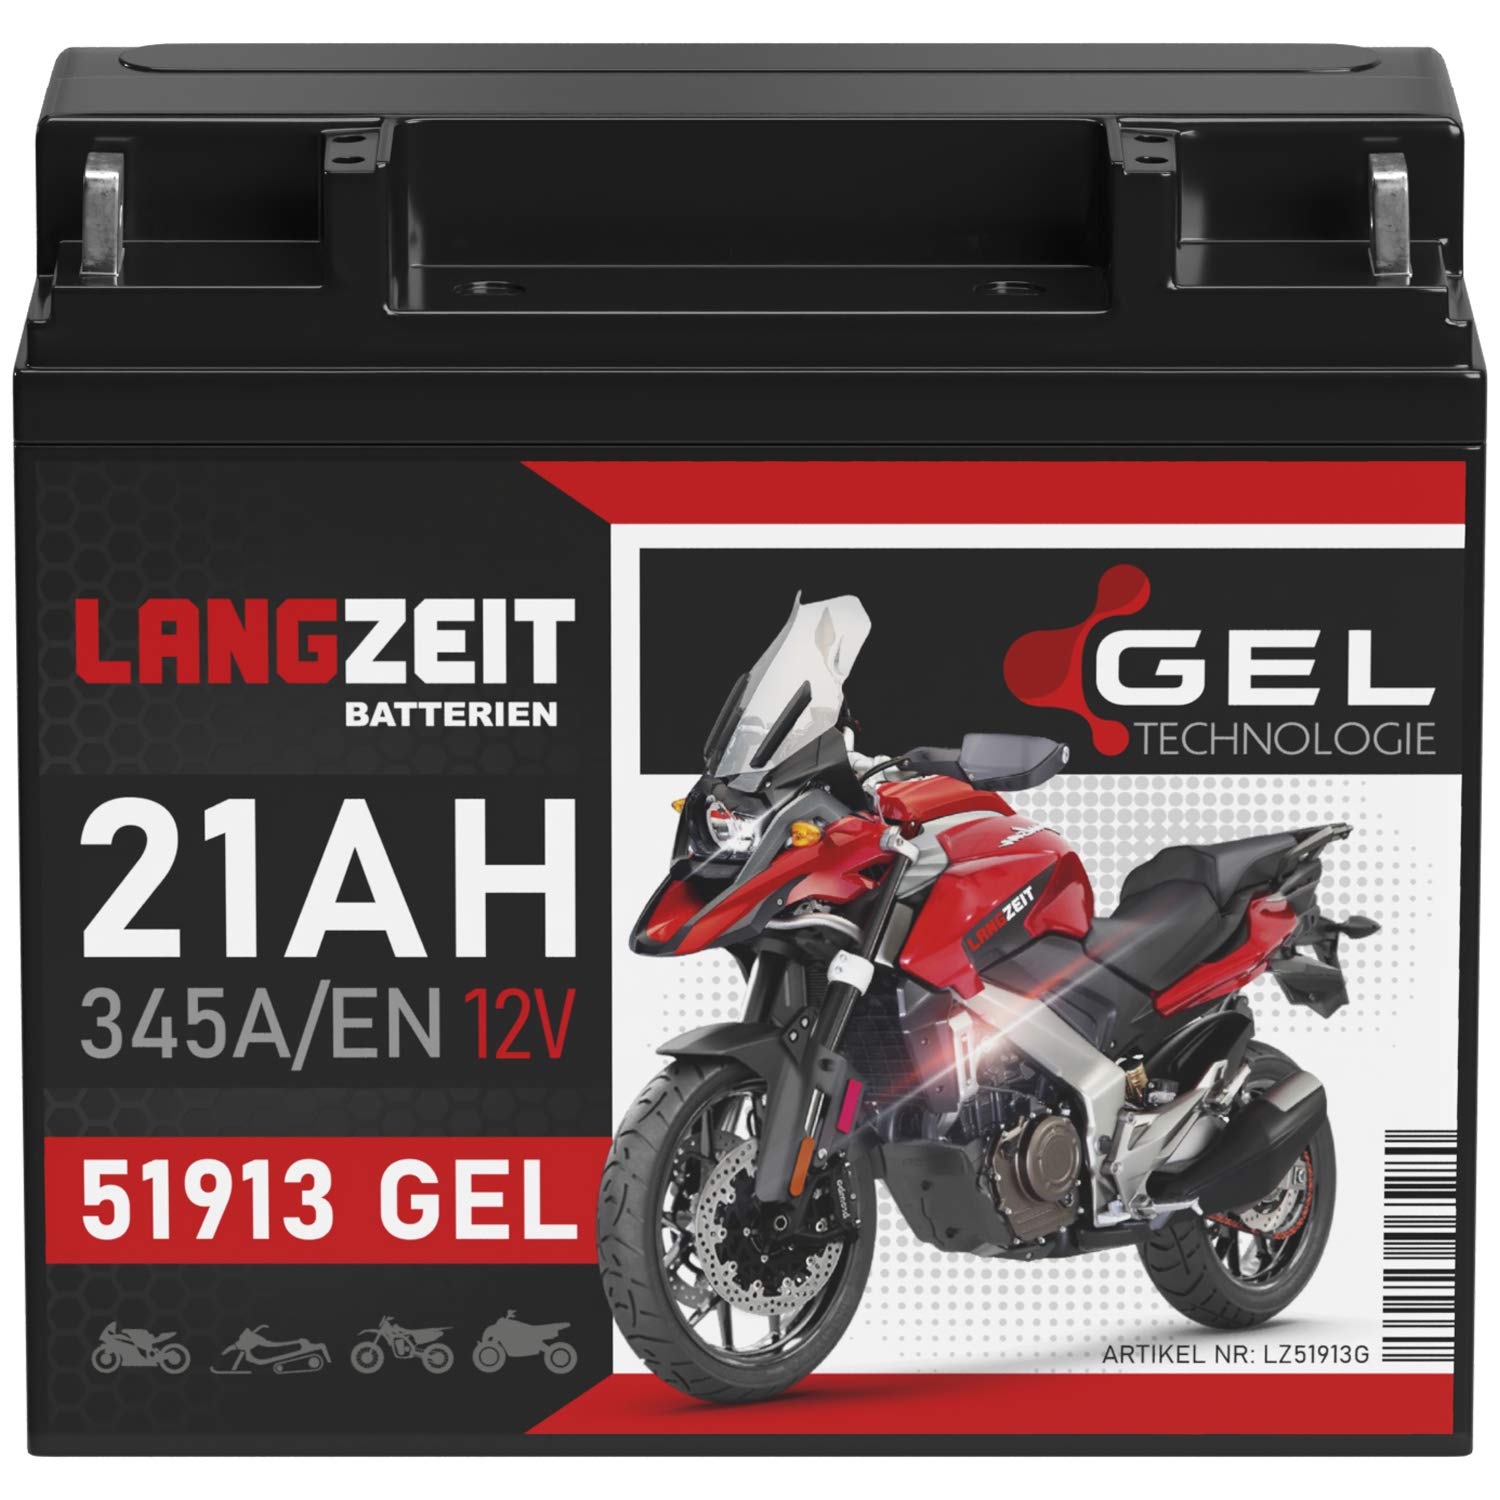 LANGZEIT 51913 GEL Motorradbatterie 12V 21Ah 345A/EN Gel Batterie 519013017 ABS 19Ah G19 doppelte Lebensdauer vorgeladen auslaufsicher wartungsfrei von LANGZEIT Batterien